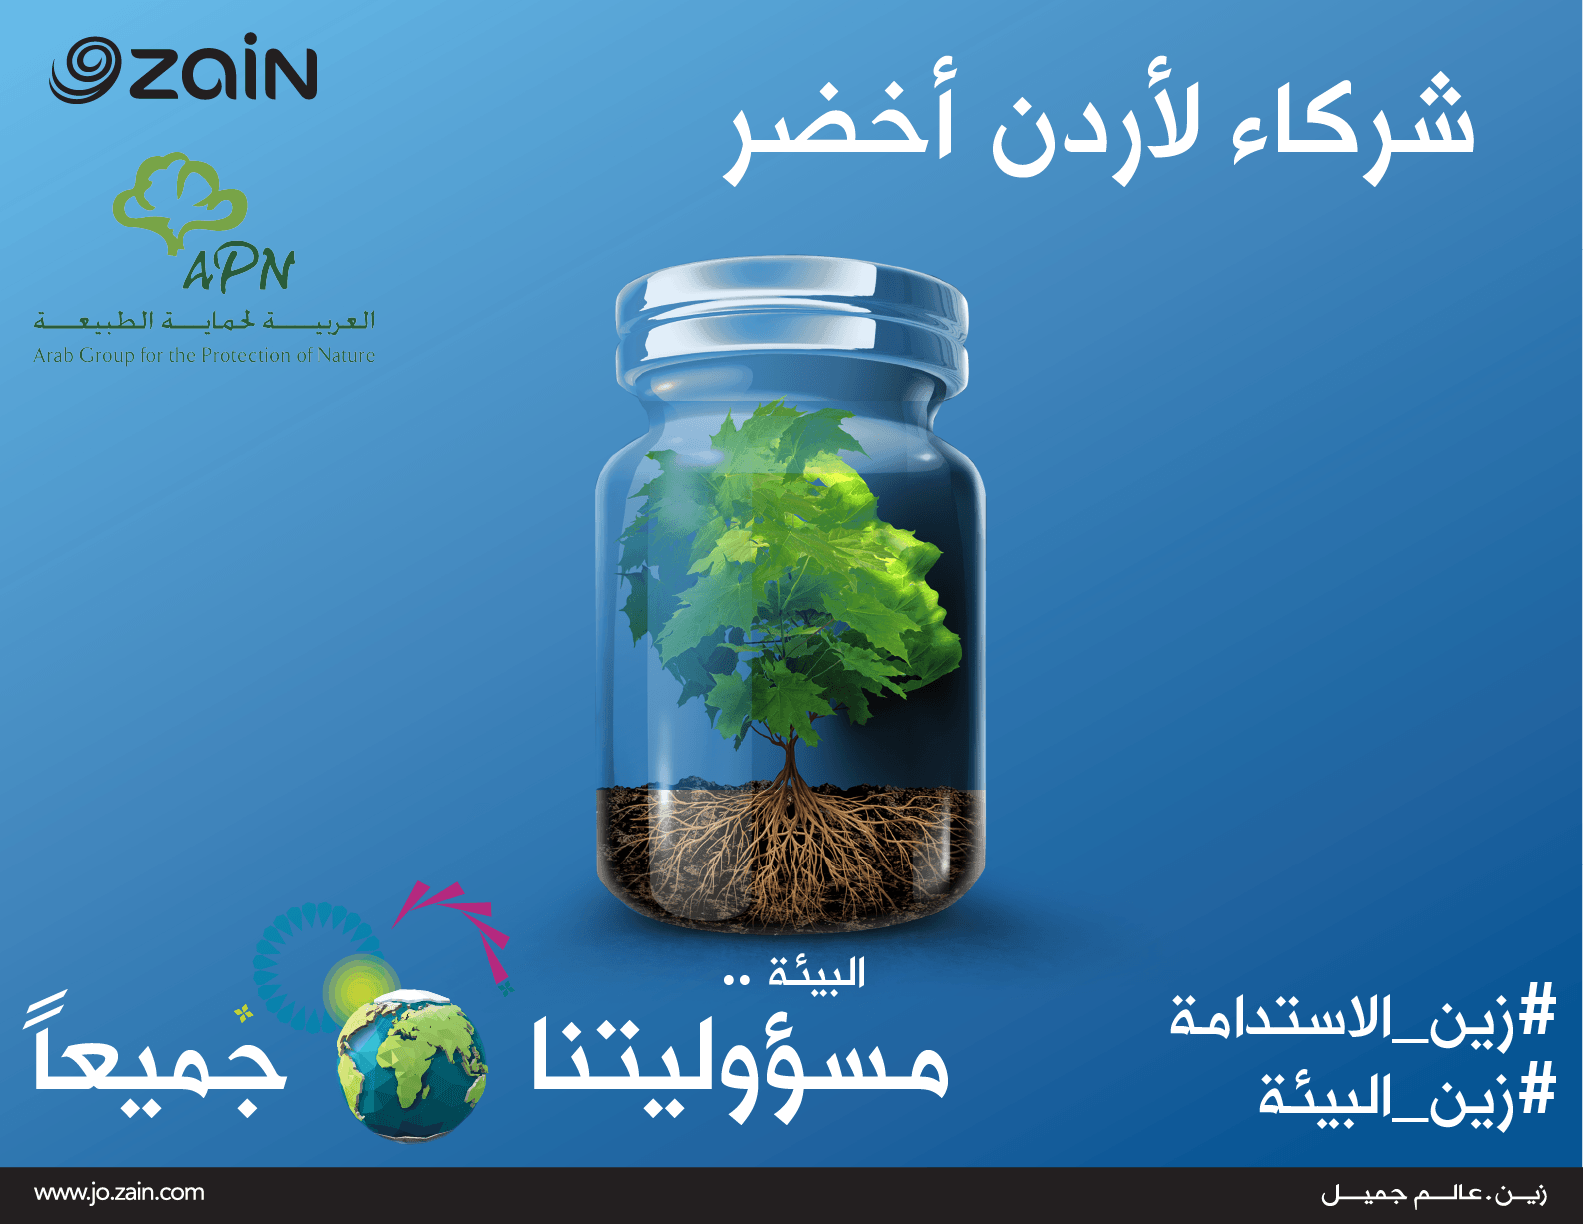 《زين》 و العربية لحماية الطبيعة&.. شراكة فاعِلة لأردنٍّ أخضر